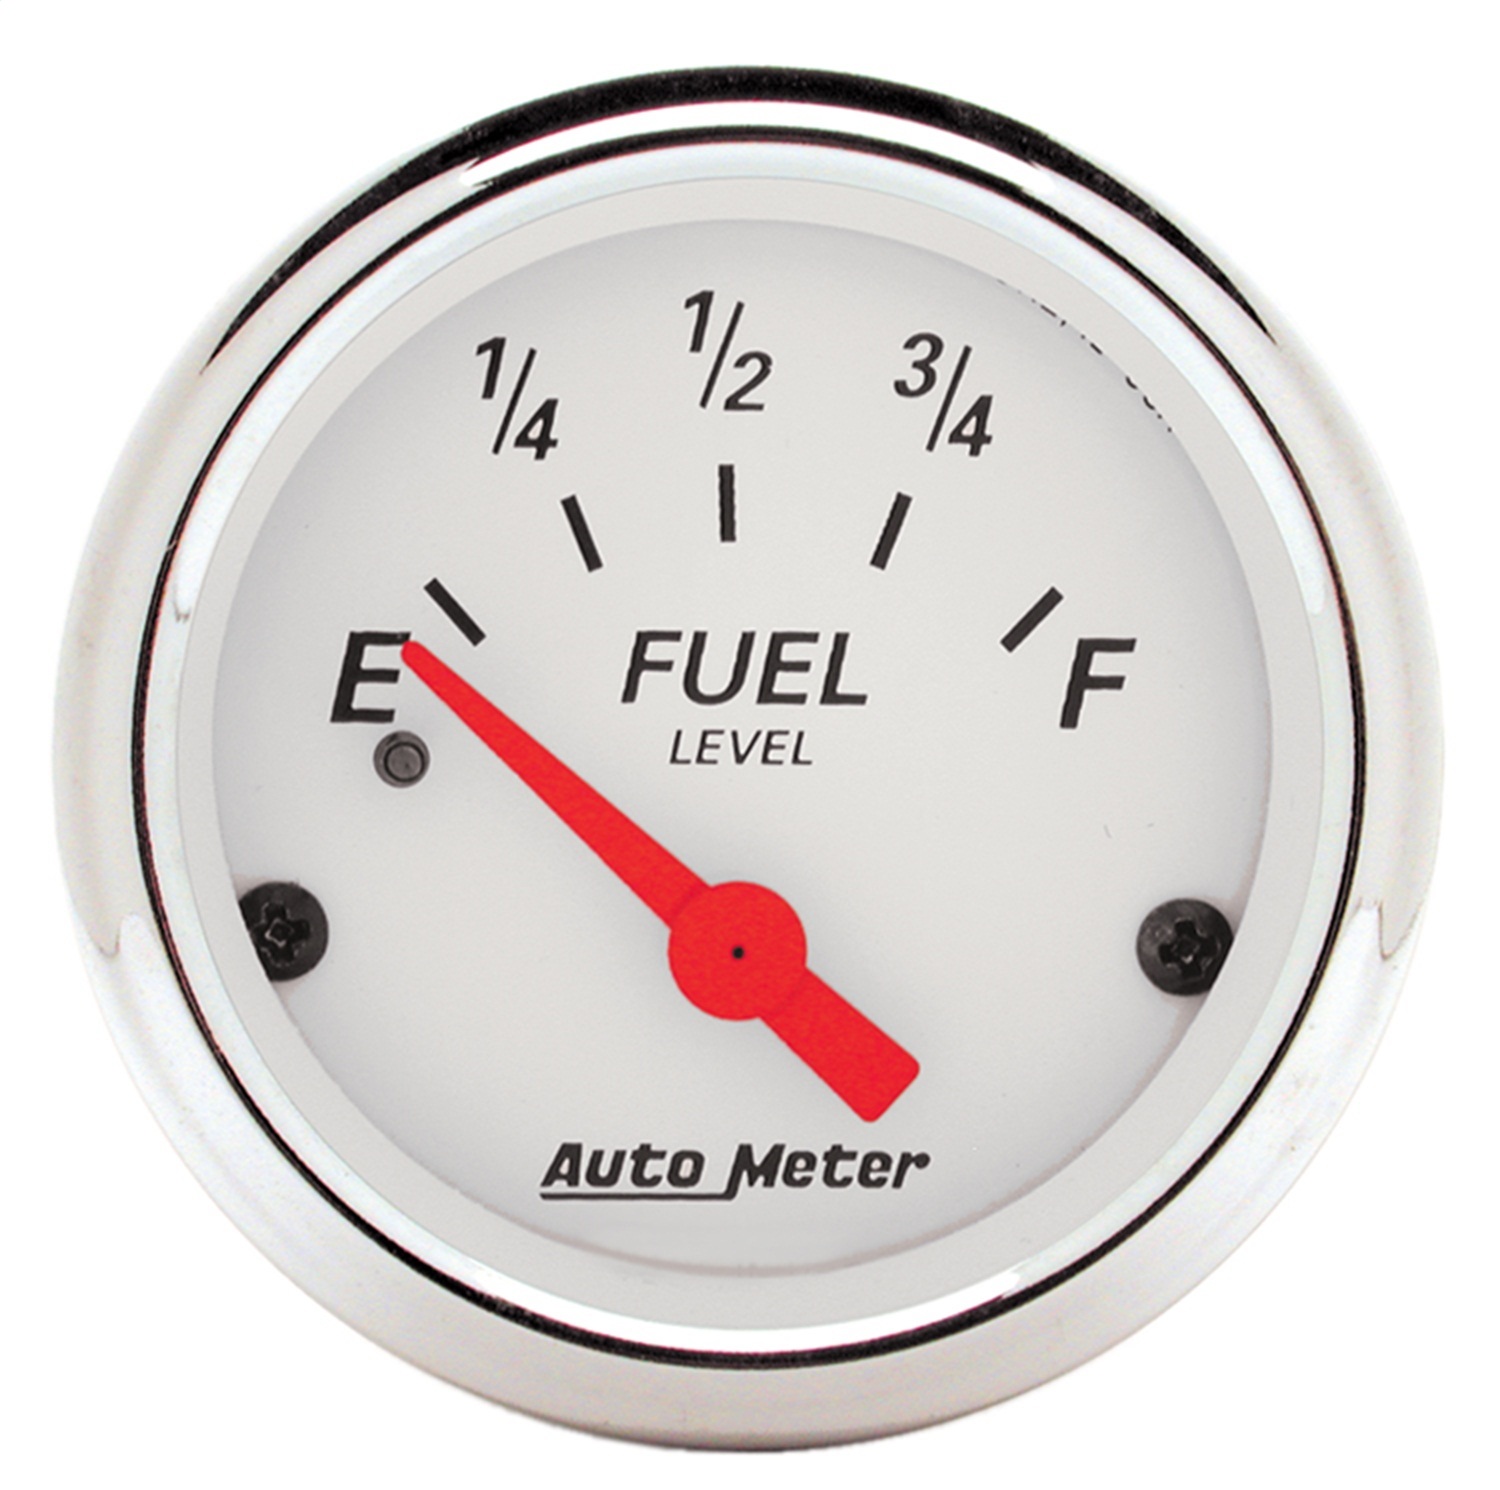 Auto Meter Auto Meter 1317 Arctic White; Fuel Level Gauge